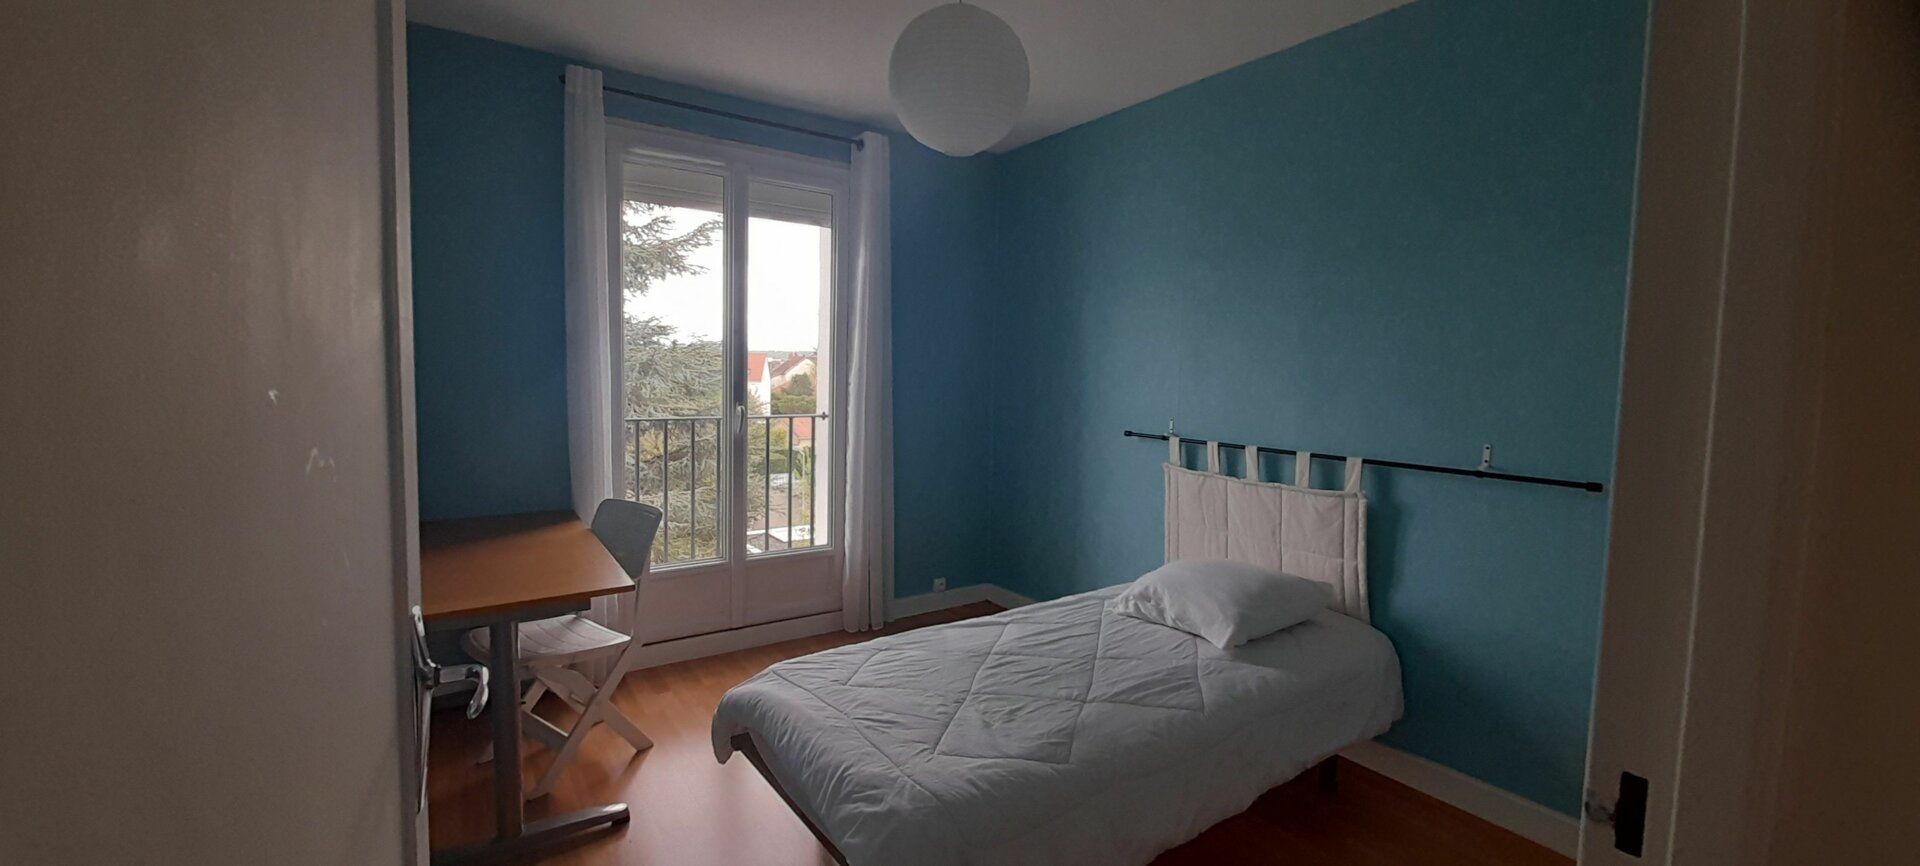 Appartement à vendre 3 67.05m2 à Bourg-en-Bresse vignette-7